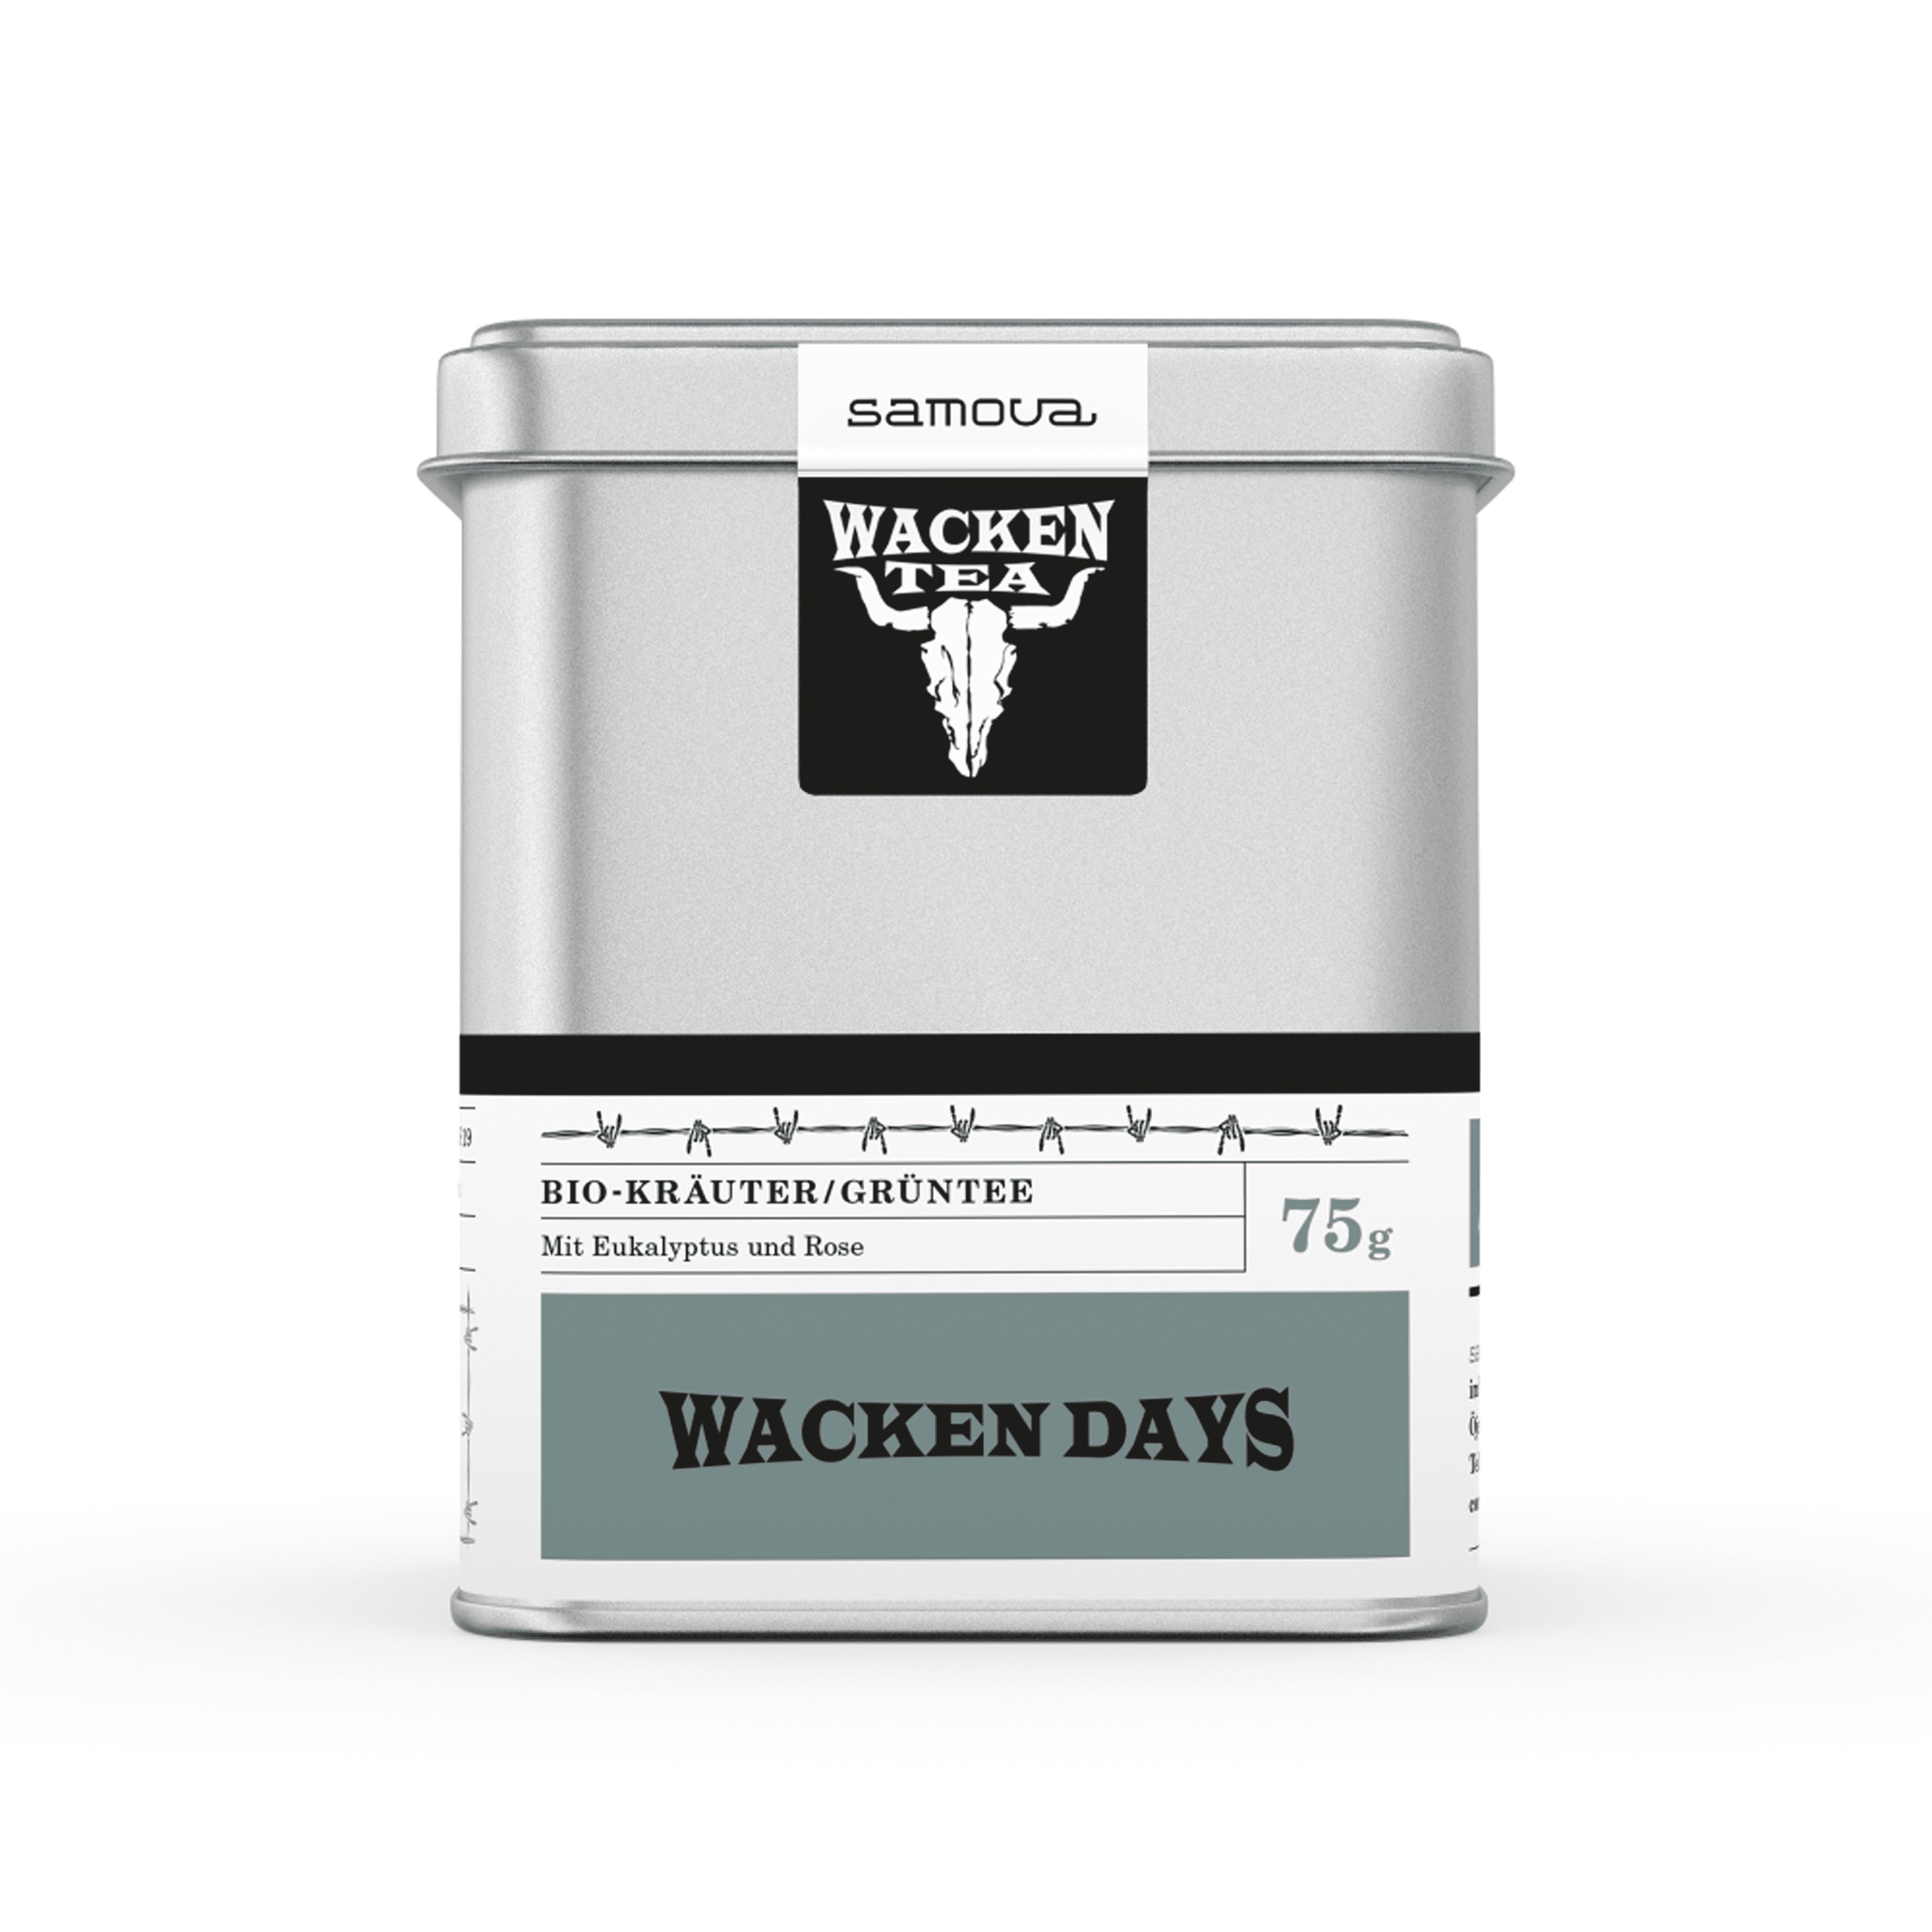 Can of Wacken Days tea